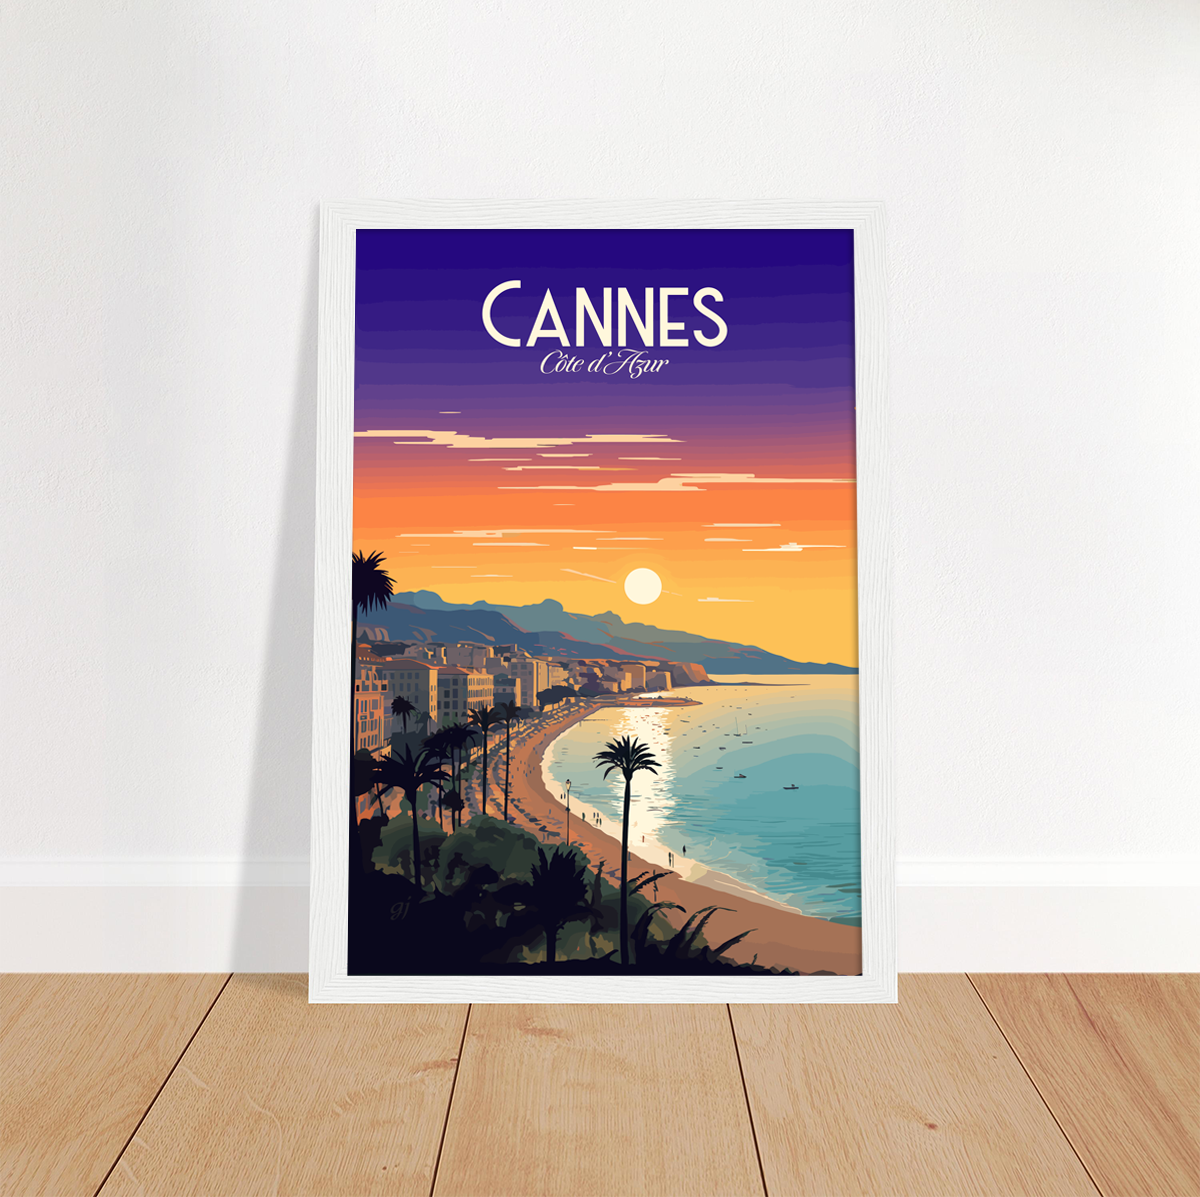 Cannes - La Croisette poster by bon voyage design